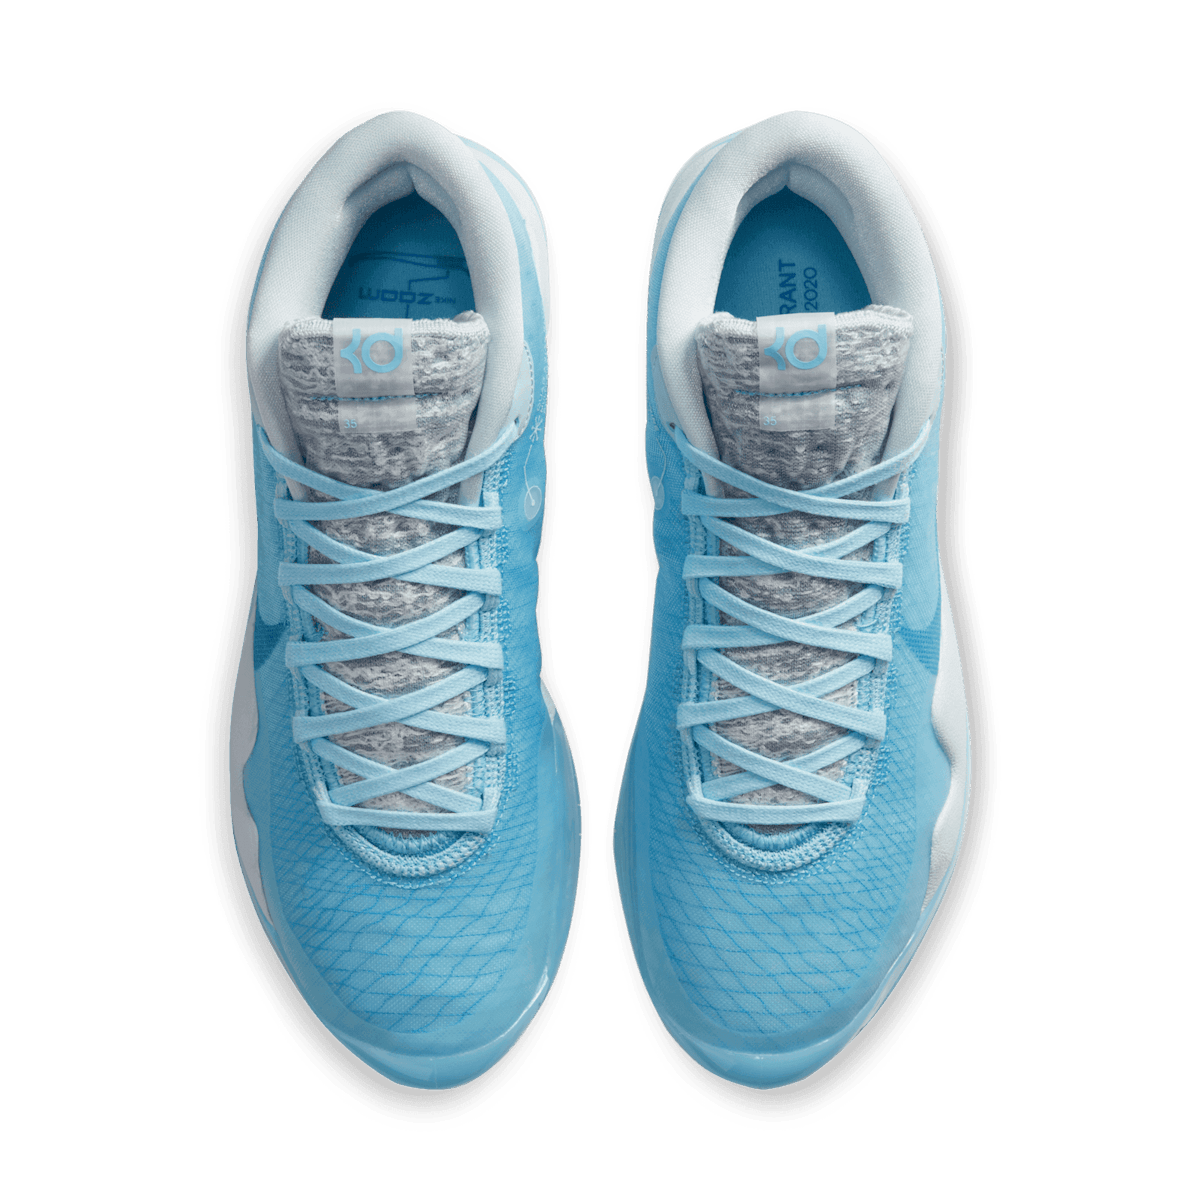 Nike KD 12 Blue Glaze Angle 1